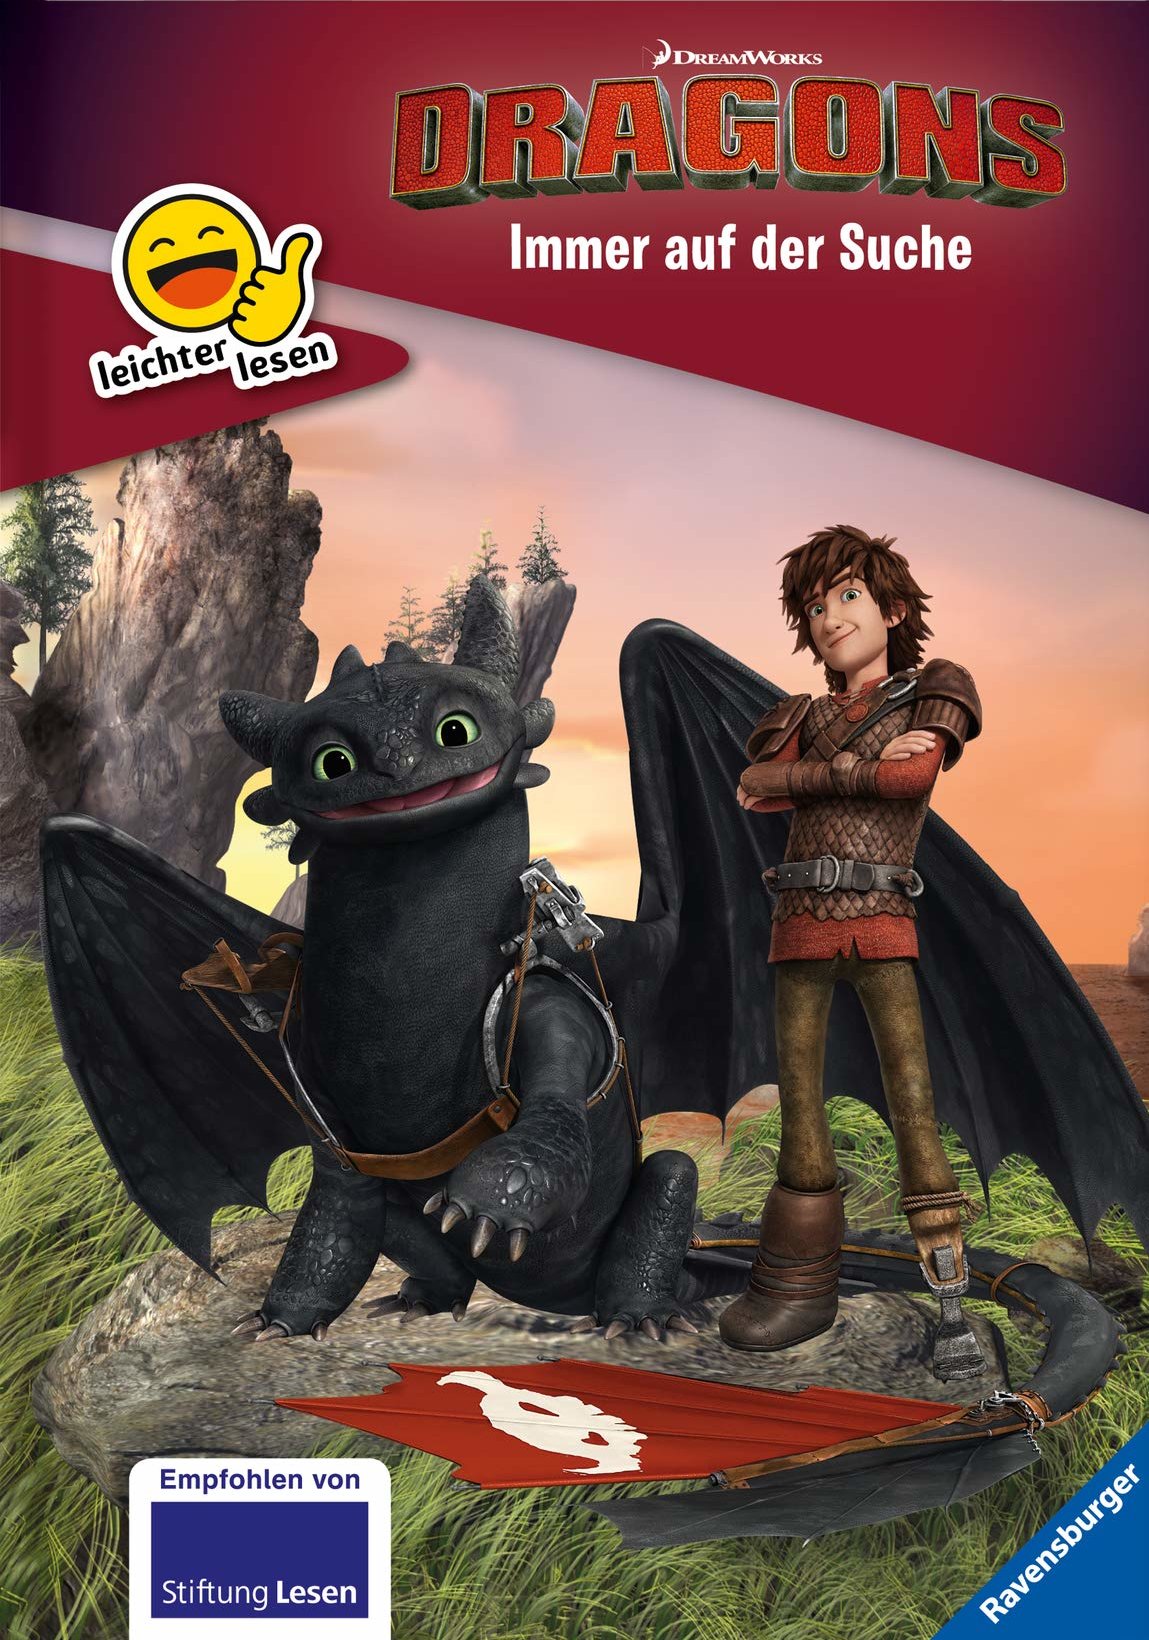 Buchcover "Dragons immer auf der Suche"